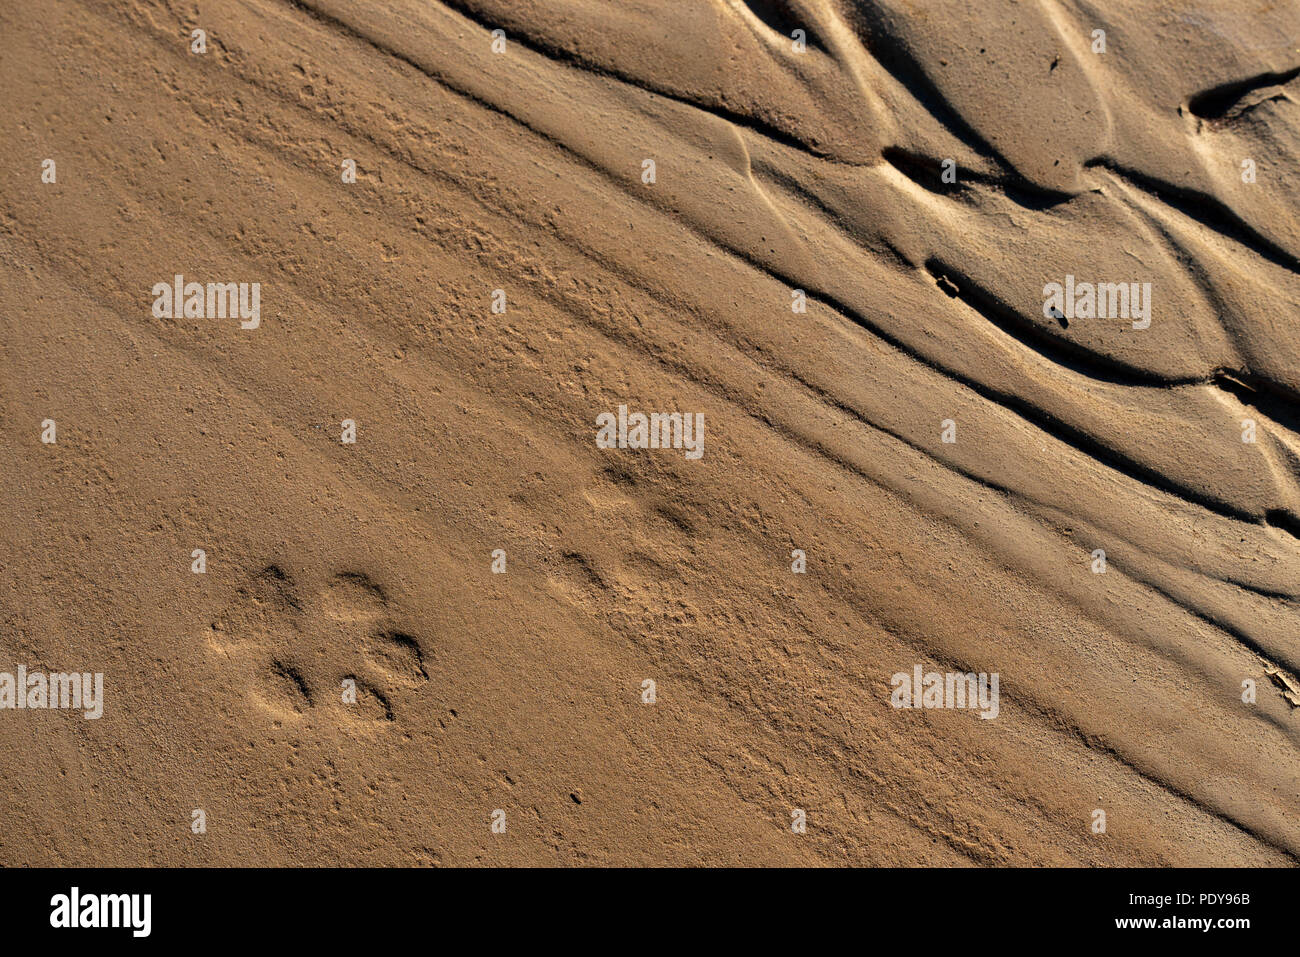 Le Coyote (Canis latrans), des empreintes de pas dans le sable. Wilderness Ojito, New Mexico, USA. Banque D'Images